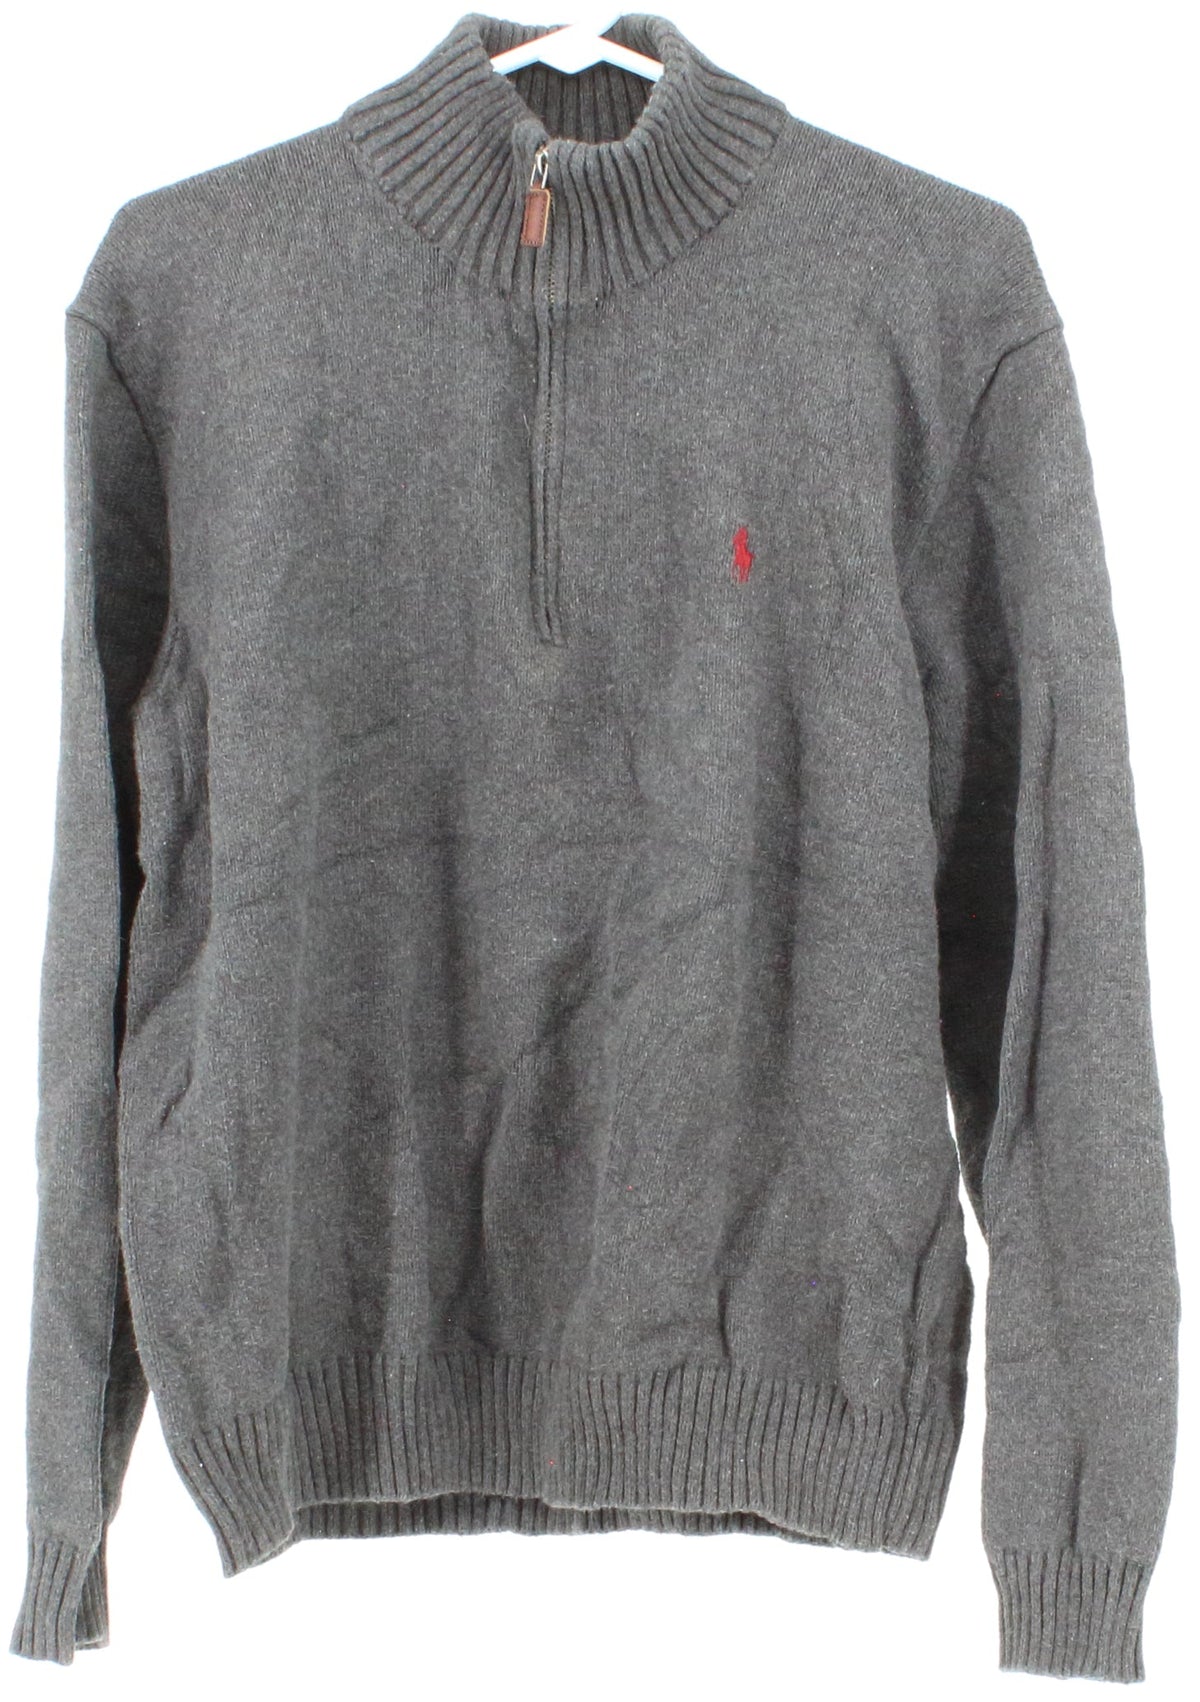 Polo by Ralph Lauren Dark Grey Men's Sweater